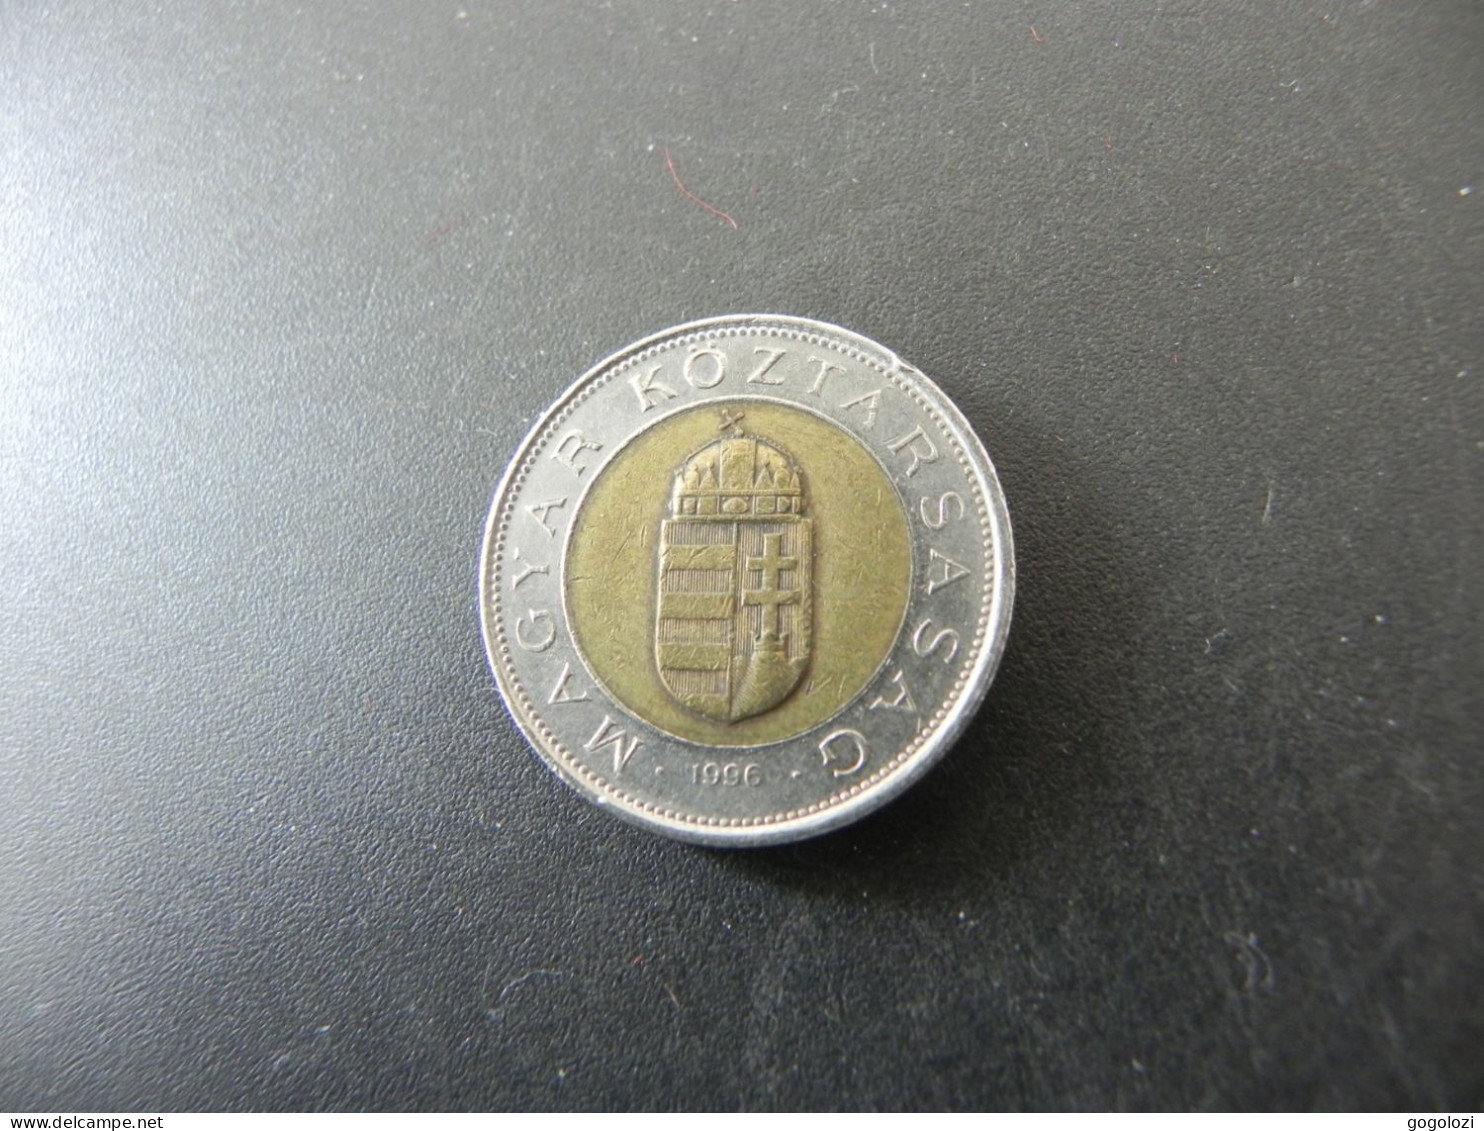 Hungary 100 Forint 1996 - Hungary